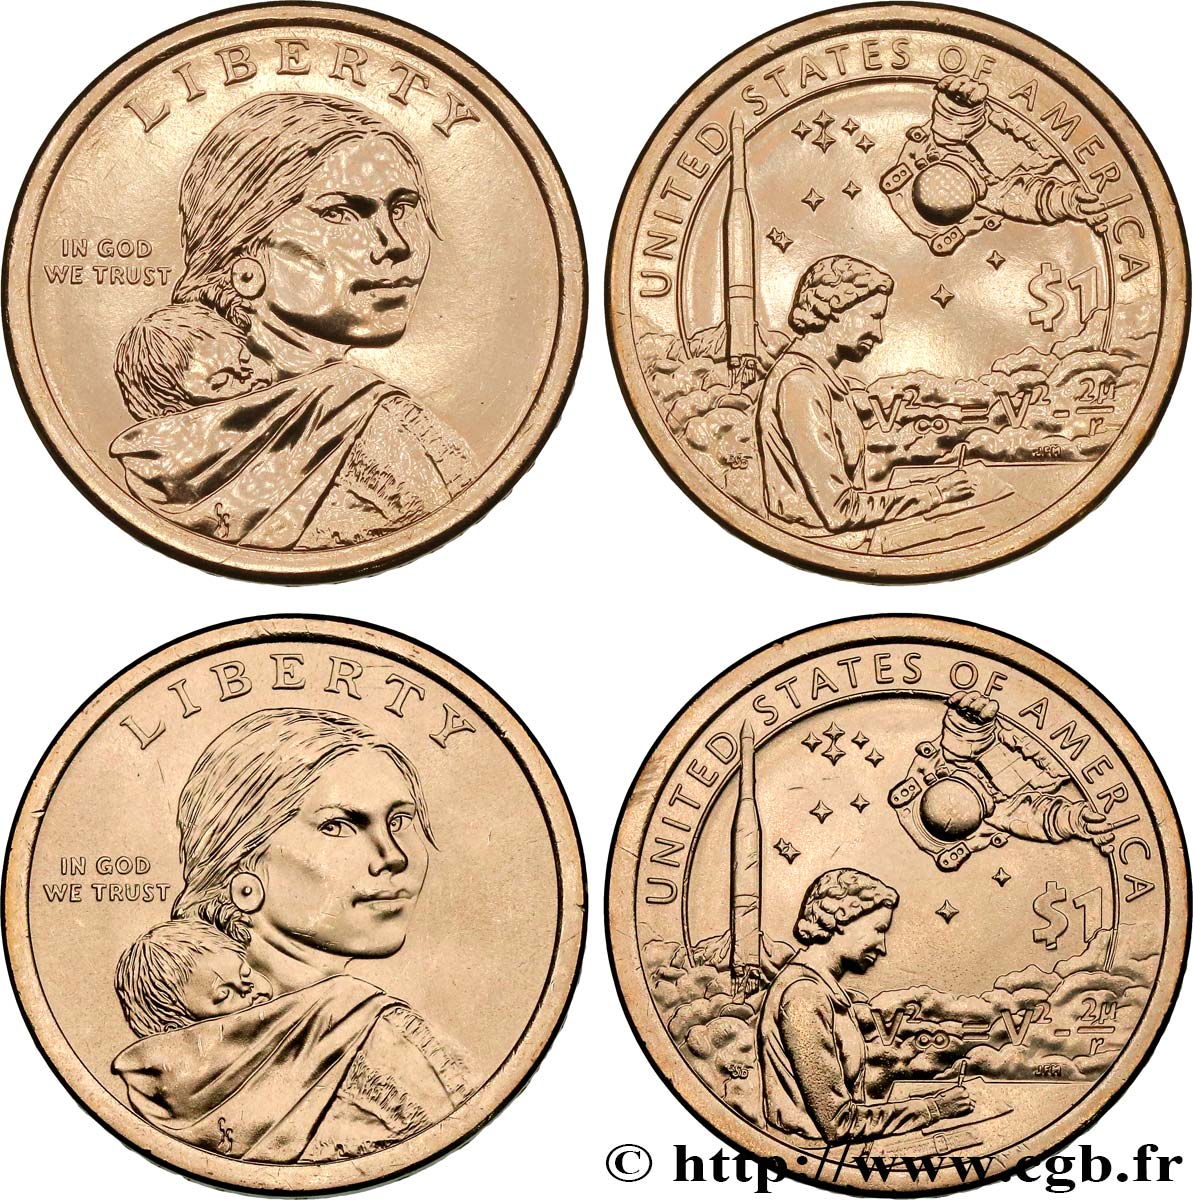 UNITED STATES OF AMERICA Lot de deux monnaies 1 Dollar contribution des indiens au programme spatial 2019 Philadelphie + Denver MS 